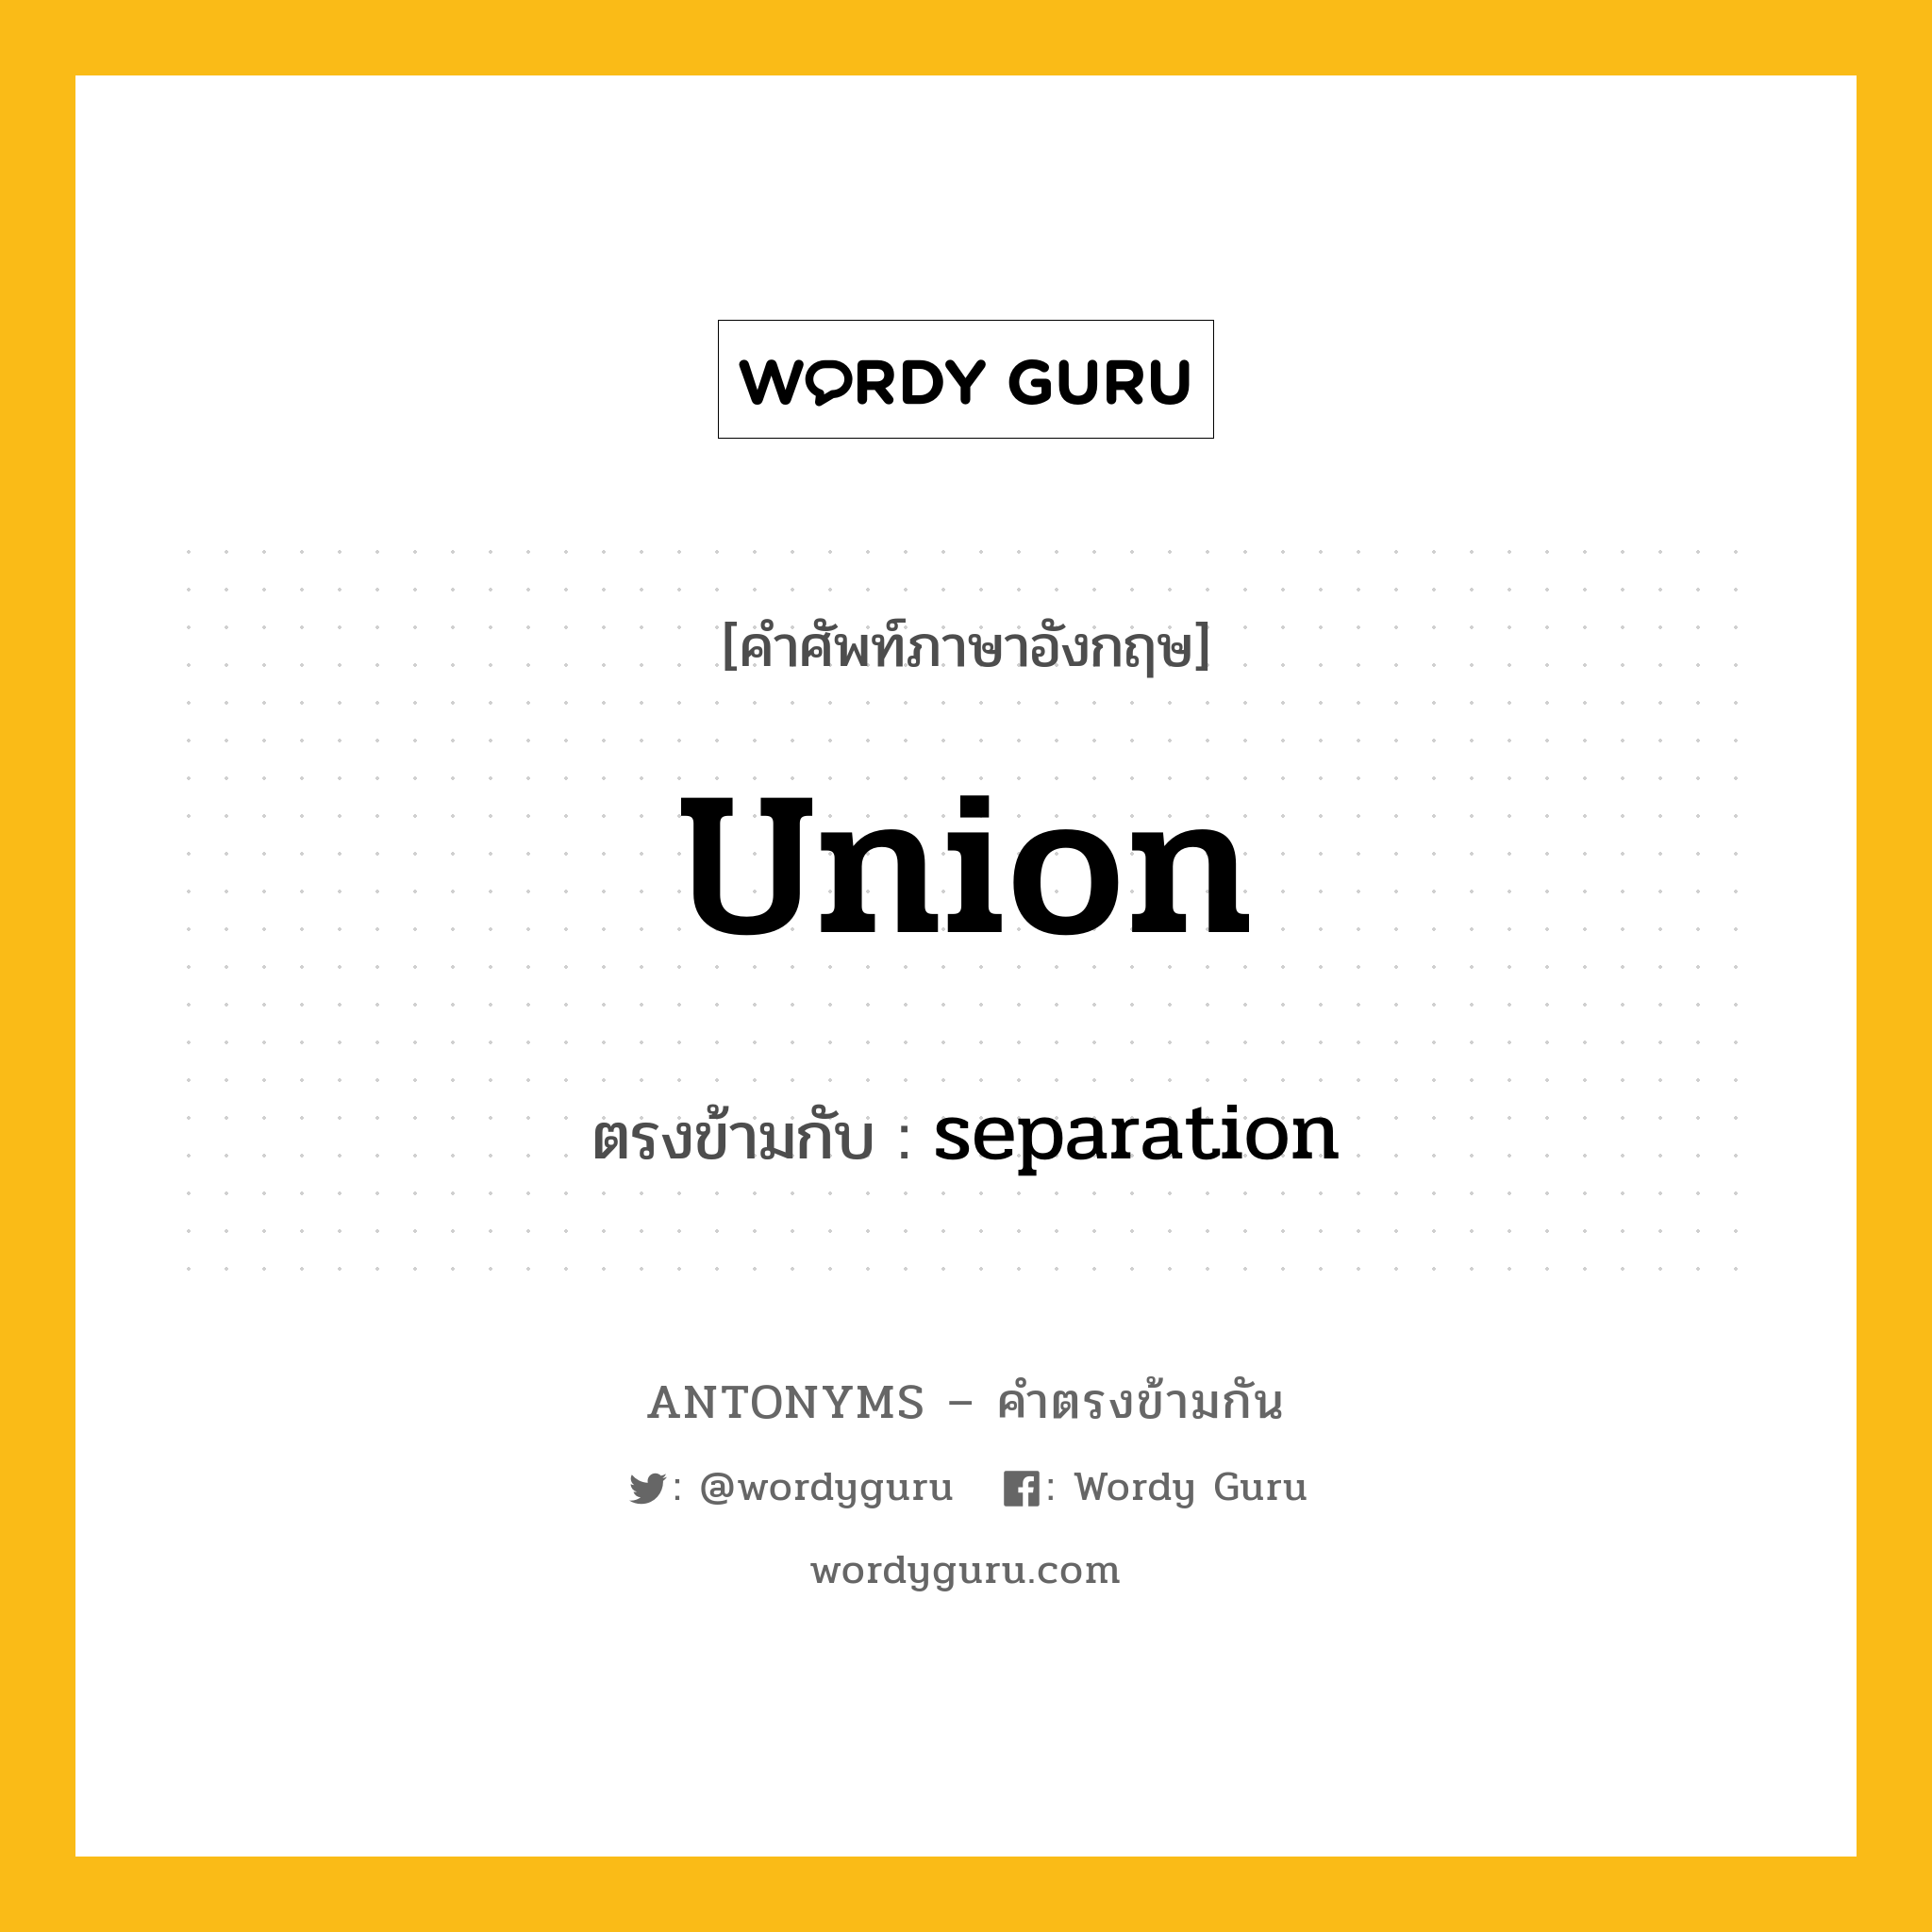 union เป็นคำตรงข้ามกับคำไหนบ้าง?, คำศัพท์ภาษาอังกฤษ union ตรงข้ามกับ separation หมวด separation